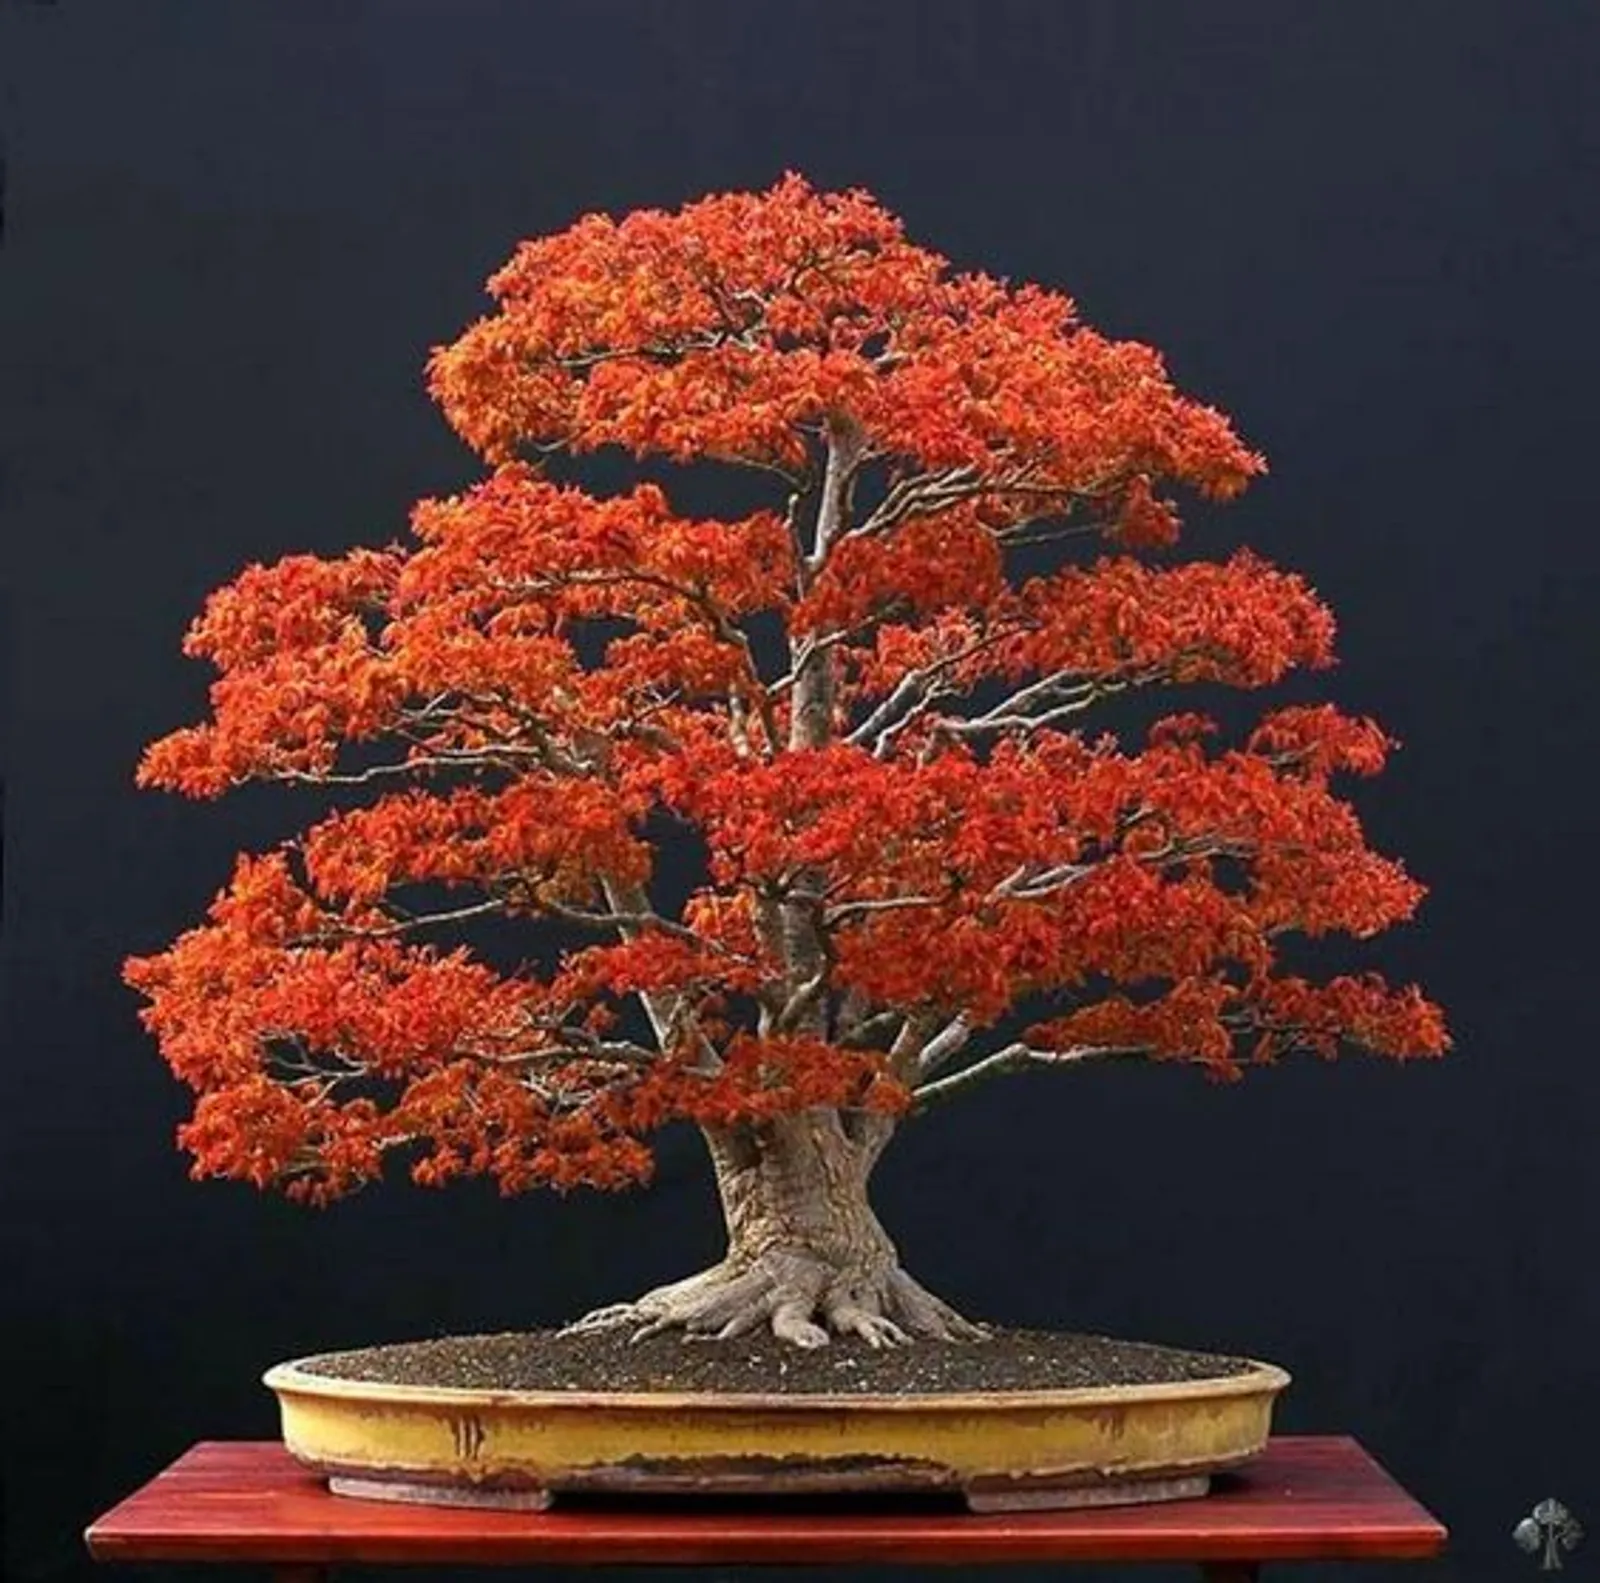 Ini 5 Cara Membuat Tanaman Bonsai, Si Miniatur Pohon yang Filosofis